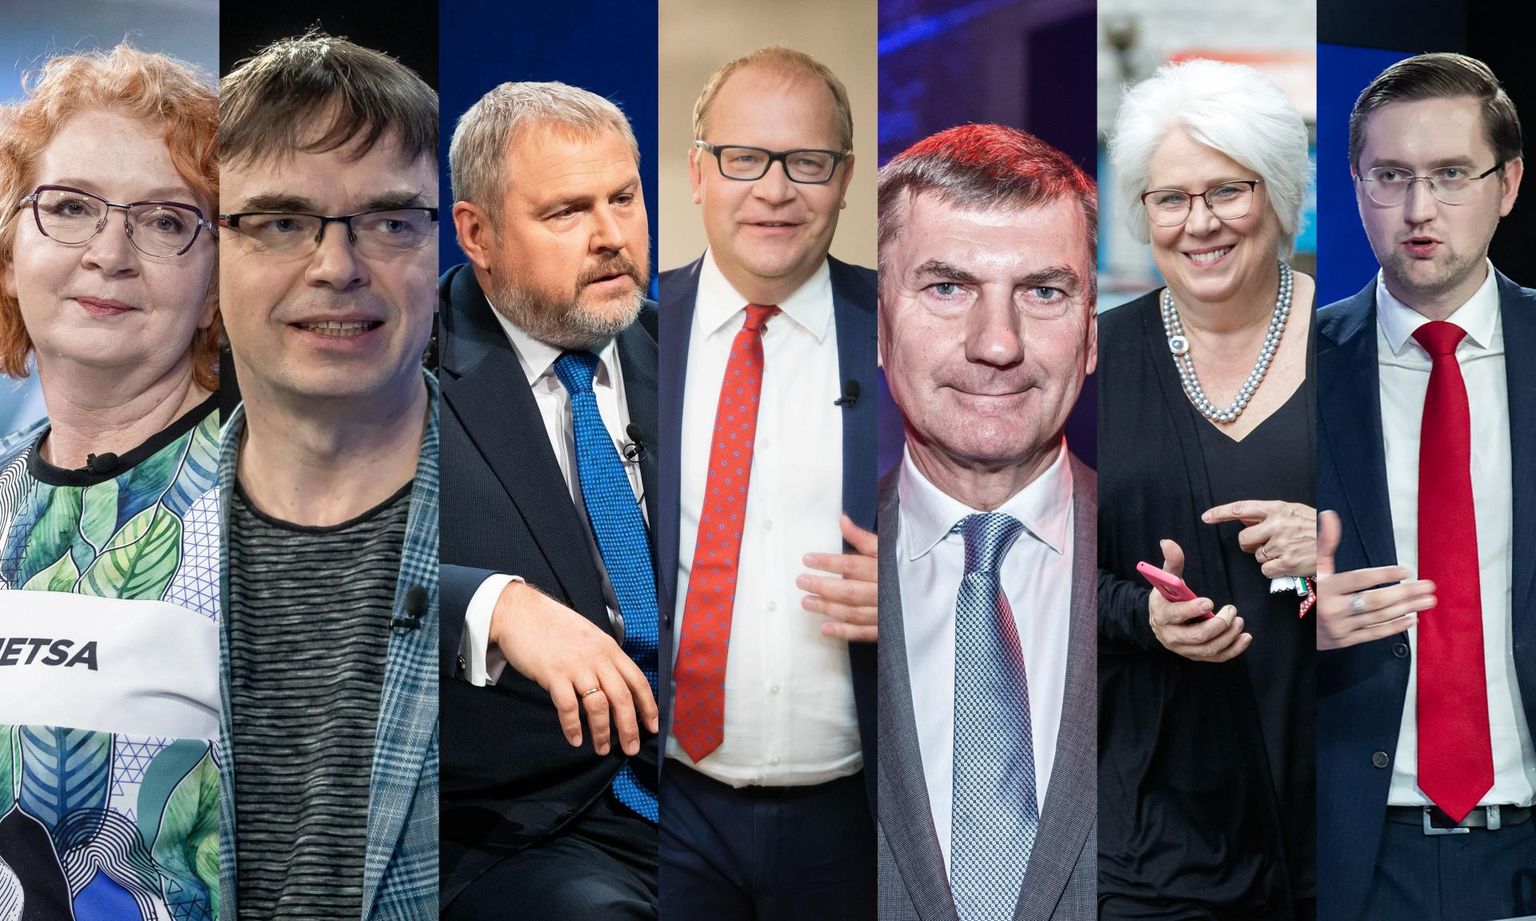 Eesti eurosaadikute seas kohtab volikogudesse kandideerimise võimaluse suhtes vastakaid seisukohti. Yana Toom ja Urmas Paet on arvamusel, et kahe esinduskogu tööd saab ühitada. Allar Jõks leiab, et MEPide dessant volikogudesse annab tunnistust erakondade lühikesest pingist.